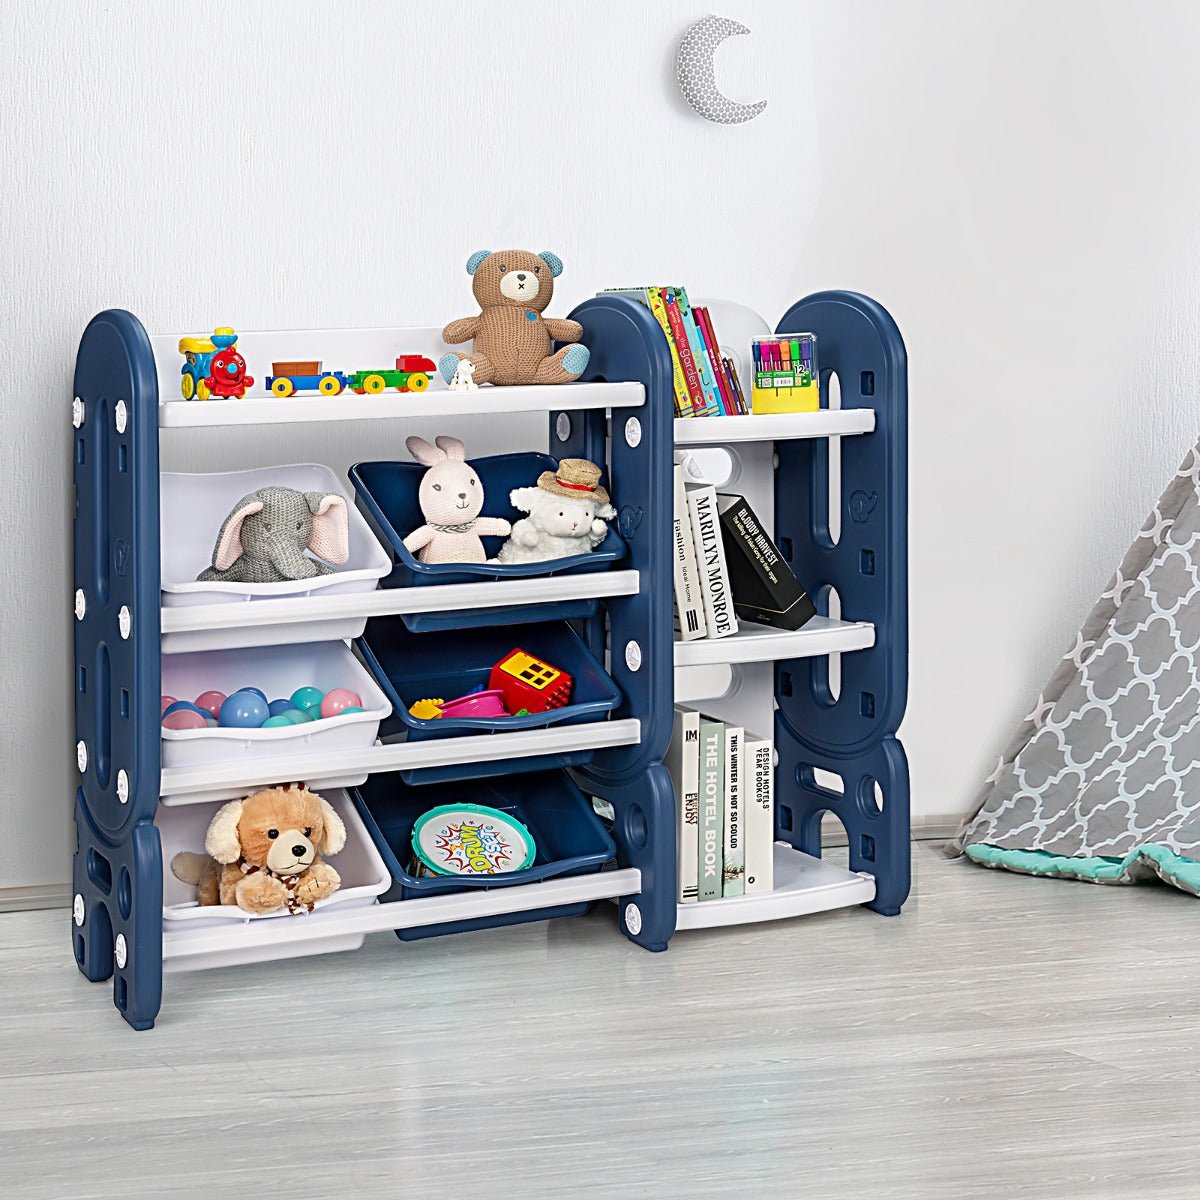 Blue Toy Storage Organizer with Bookshelf - Child's Room Harmony